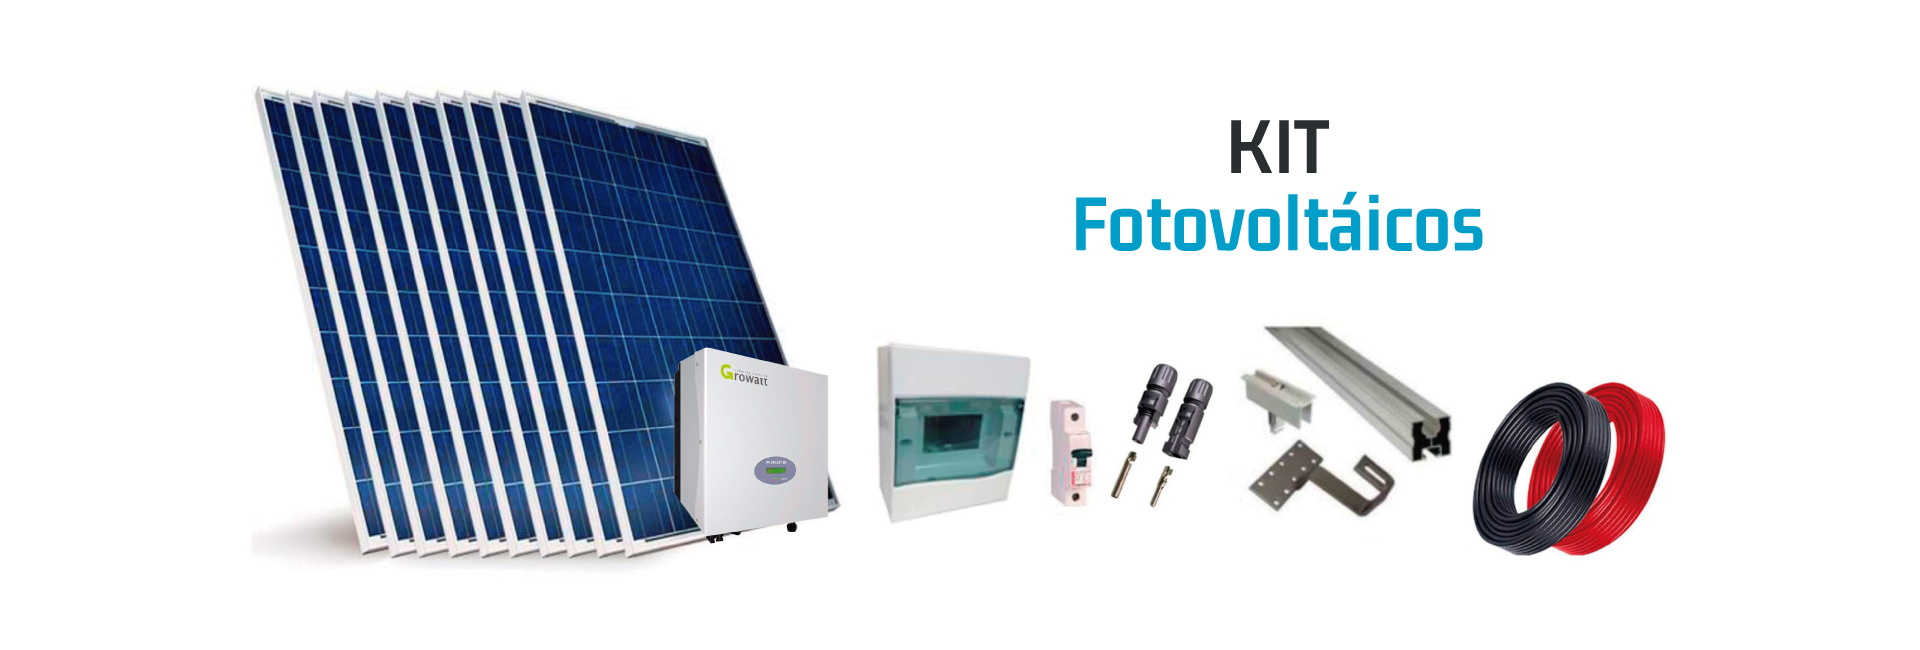 Kit Fotovoltaicos